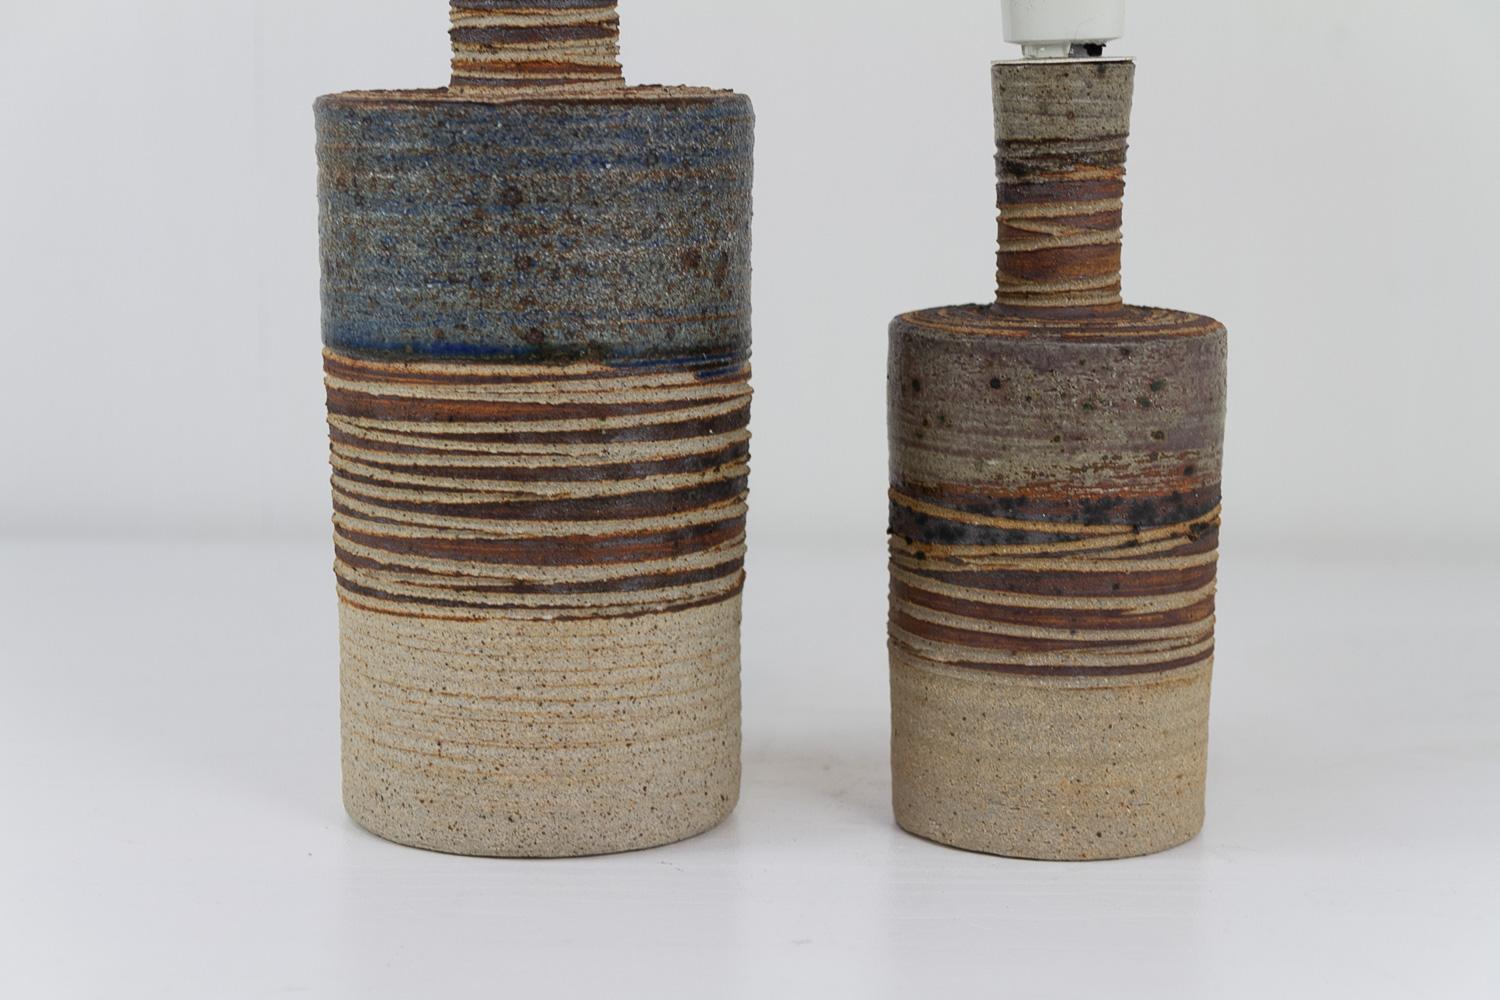 Dänische moderne Tue Poulsen-Keramik-Tischlampen, 1960er Jahre. Satz von 2.
Paar rustikale  handgefertigte skandinavische moderne Keramiklampen aus Steinzeug, die in den 1960er Jahren vom dänischen Künstler Tue Poulsen in Dänemark hergestellt